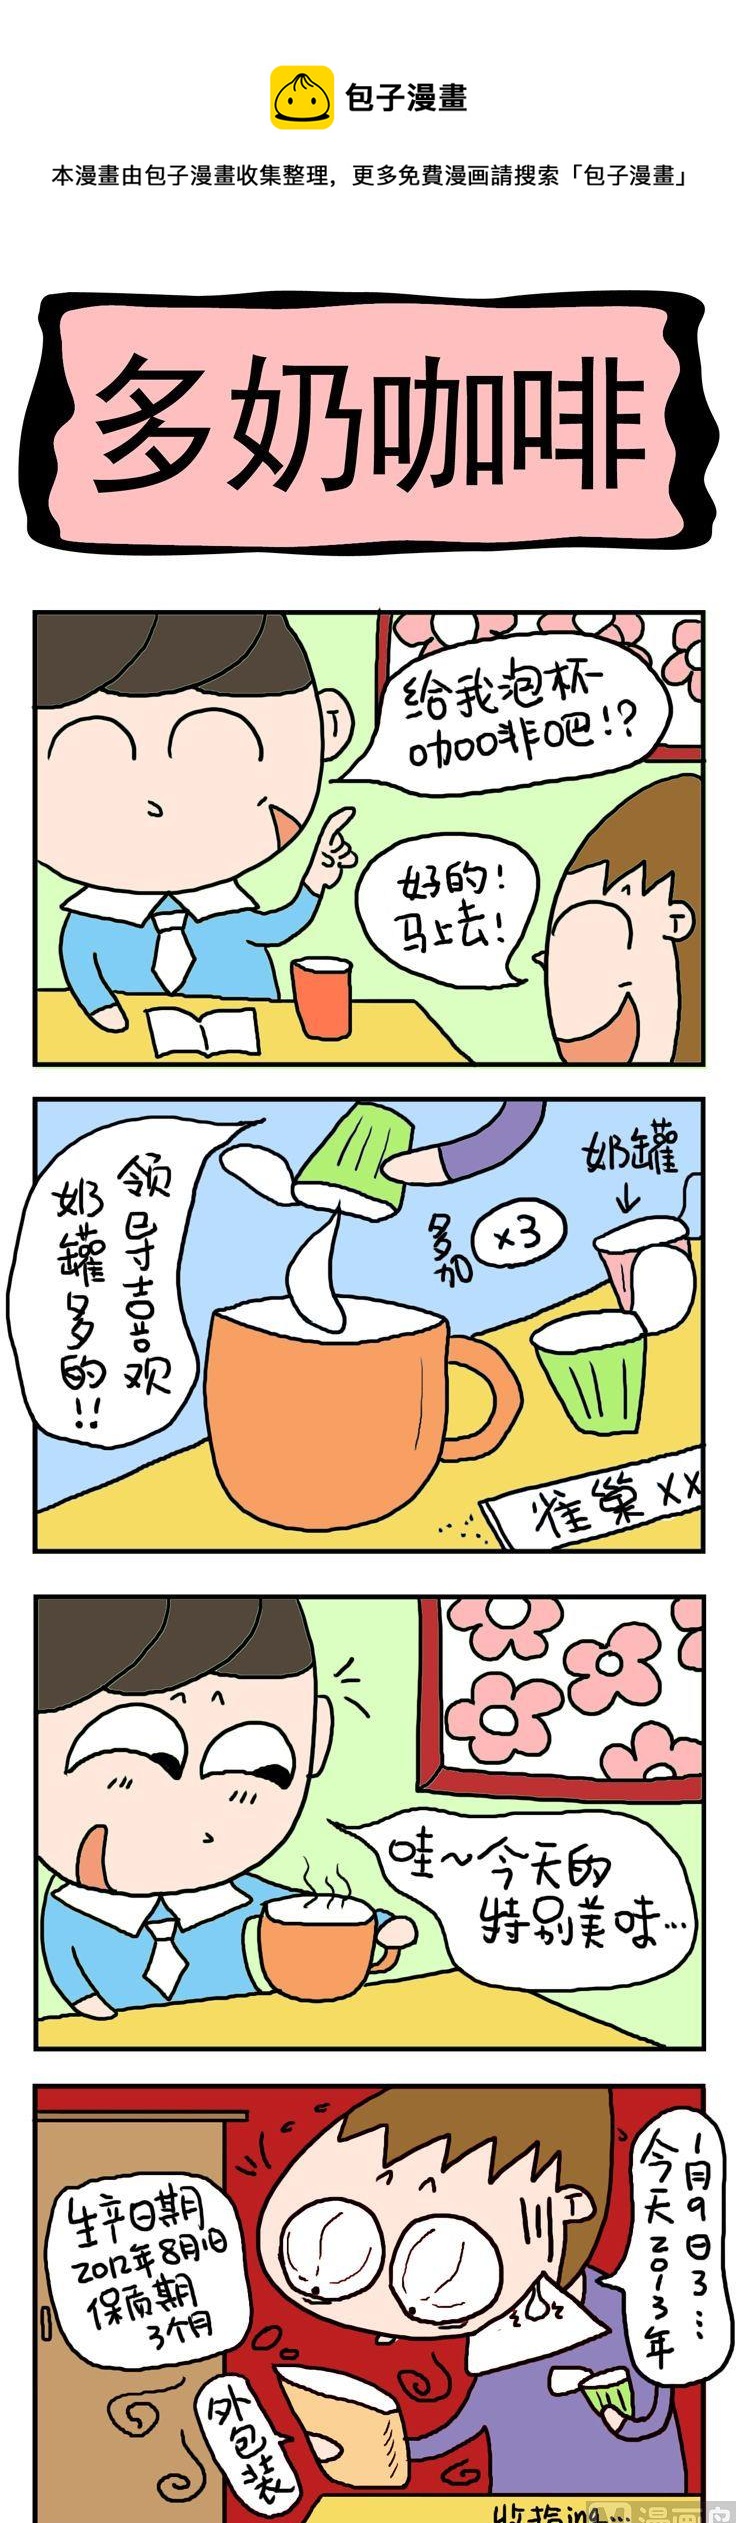 屌絲立志記 - 71.多奶咖啡 - 1